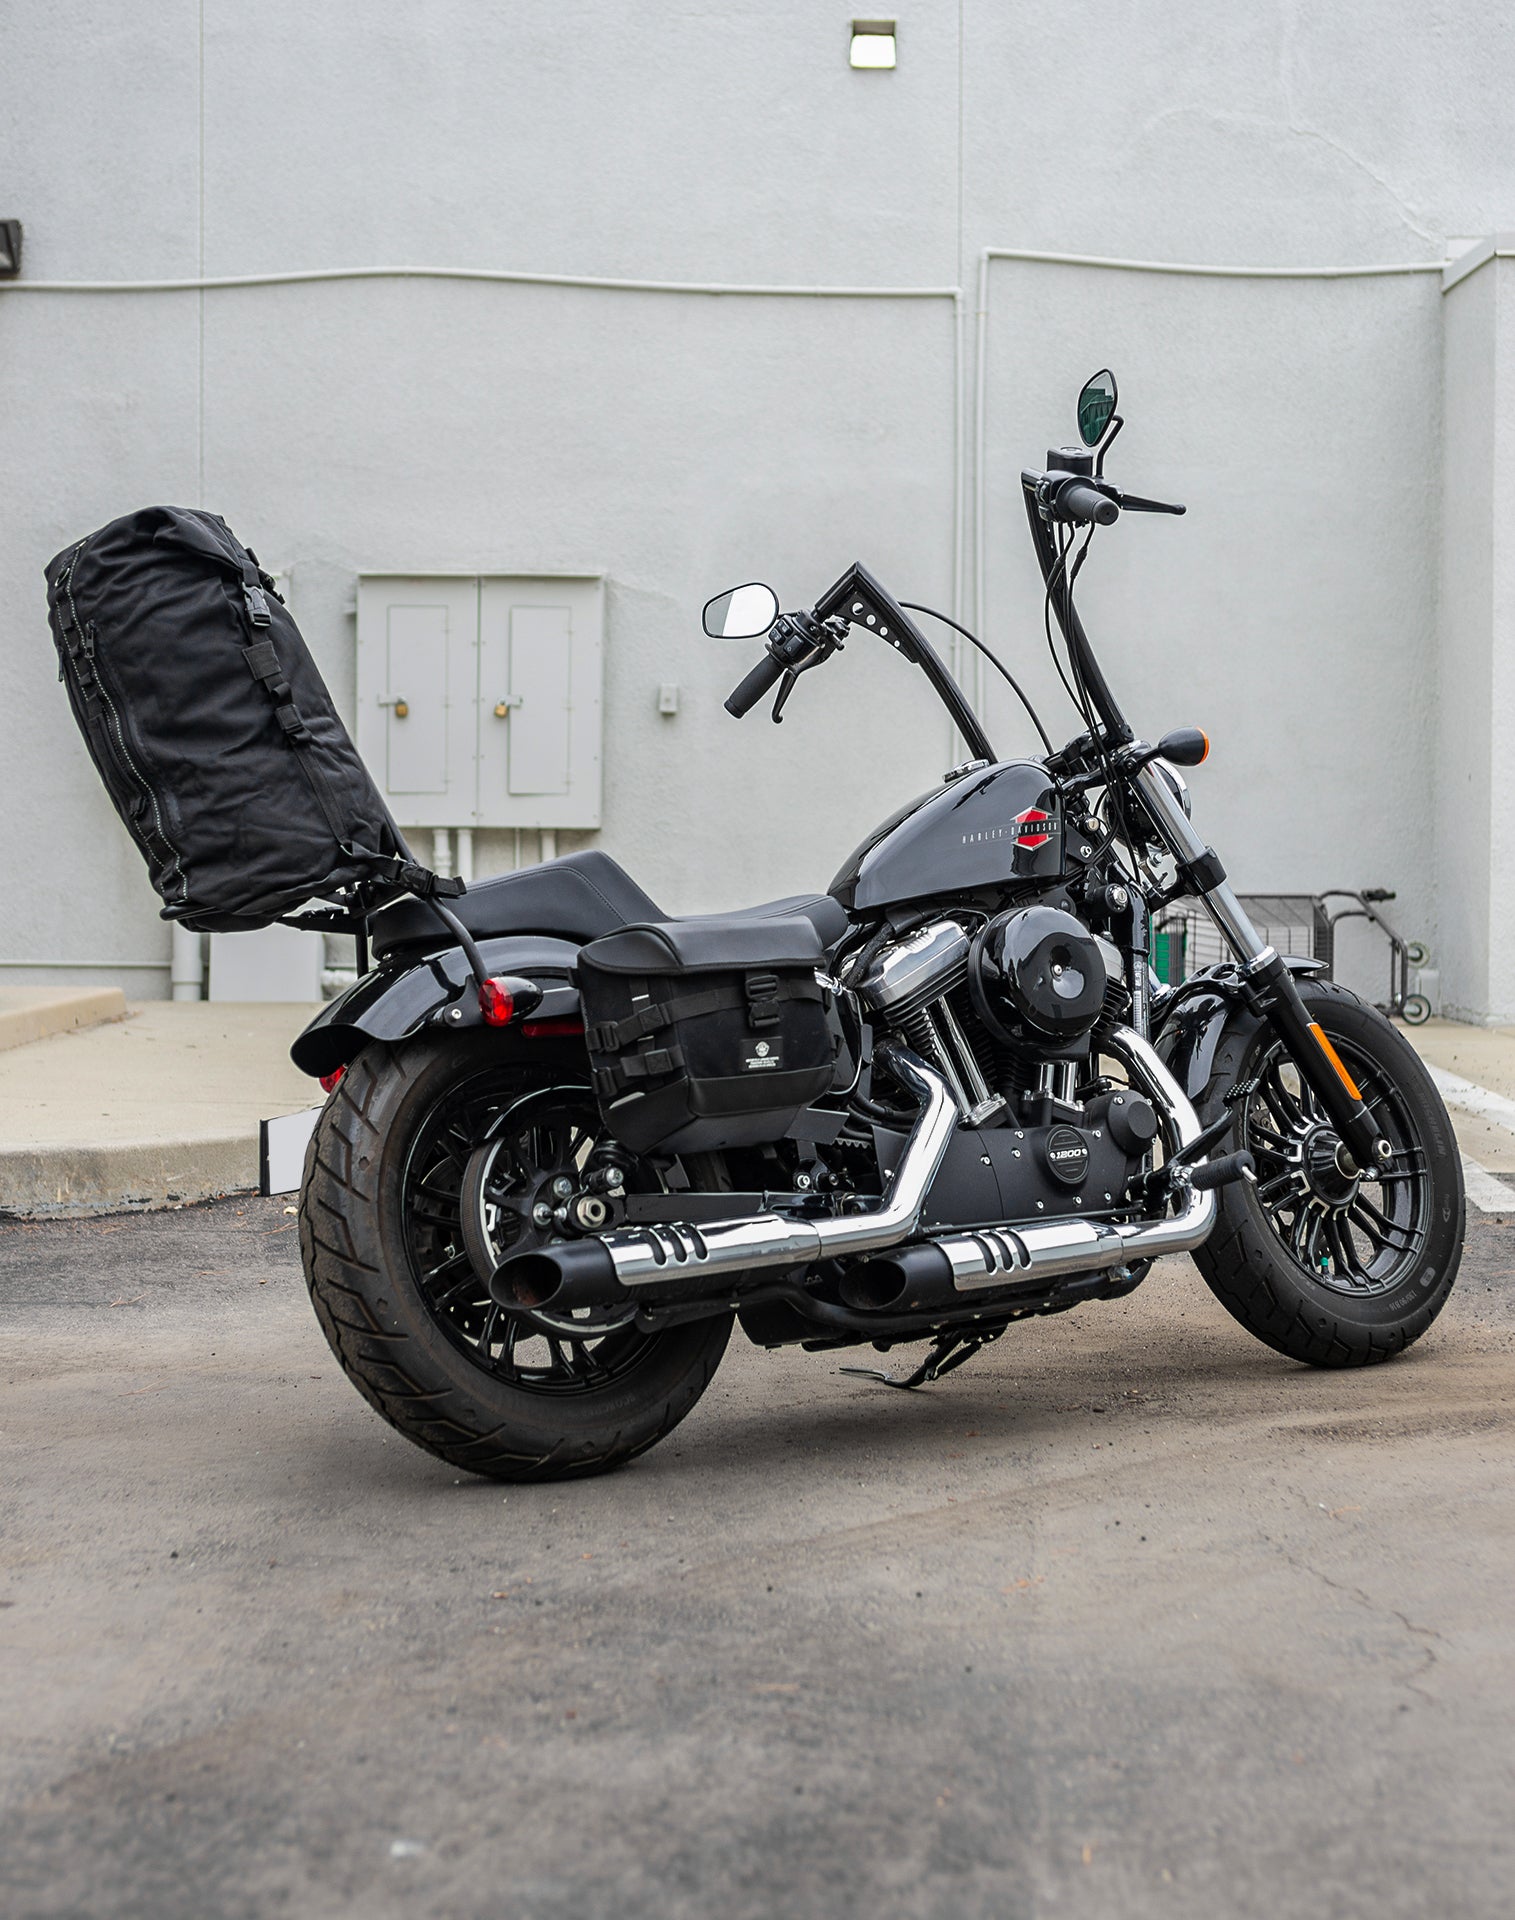 35L - Renegade XL Kawasaki Motorcycle Dry Backpack